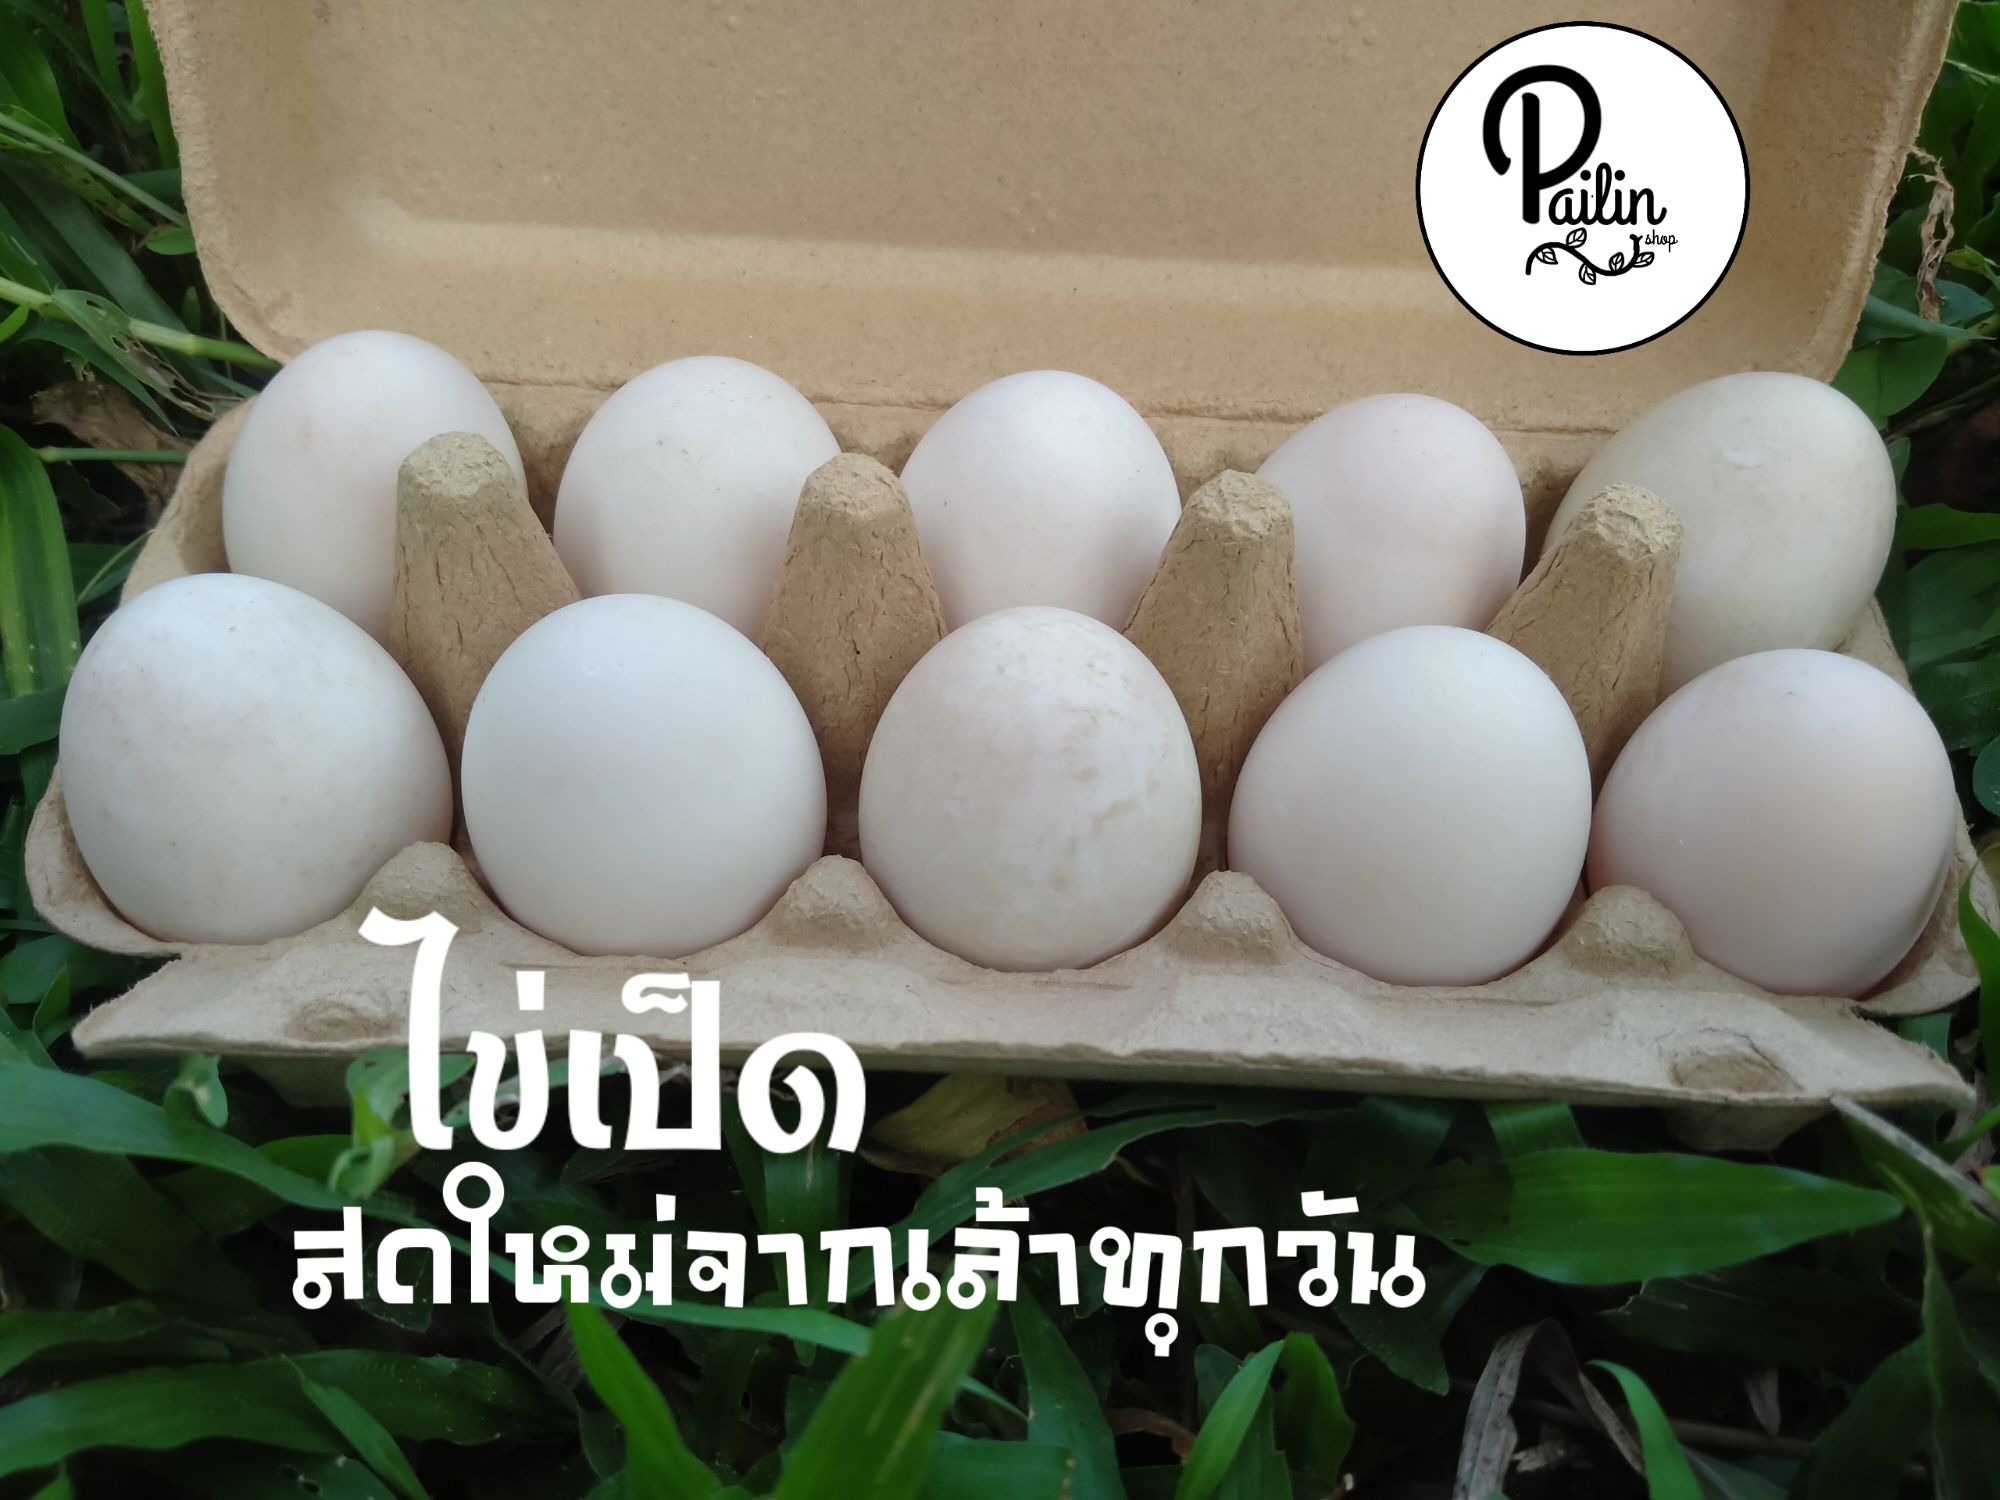 ไข่เป็ด สดใหม่จากเล้าทุกวัน คละไซส์(แพ็ค 10 ฟอง) | Lazada.Co.Th